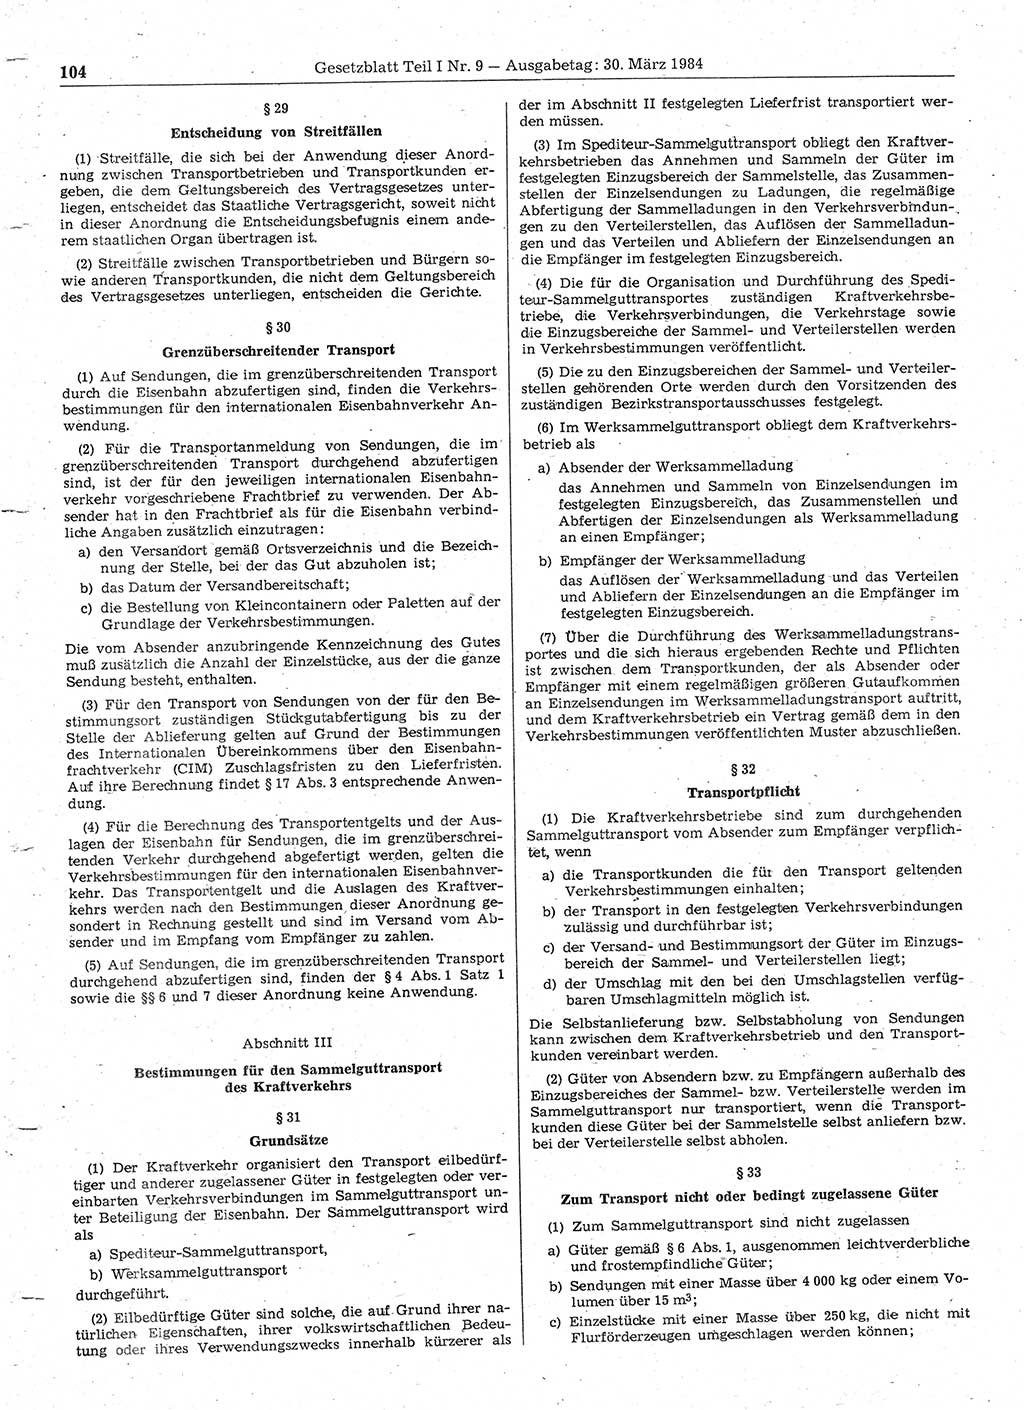 Gesetzblatt (GBl.) der Deutschen Demokratischen Republik (DDR) Teil Ⅰ 1984, Seite 104 (GBl. DDR Ⅰ 1984, S. 104)